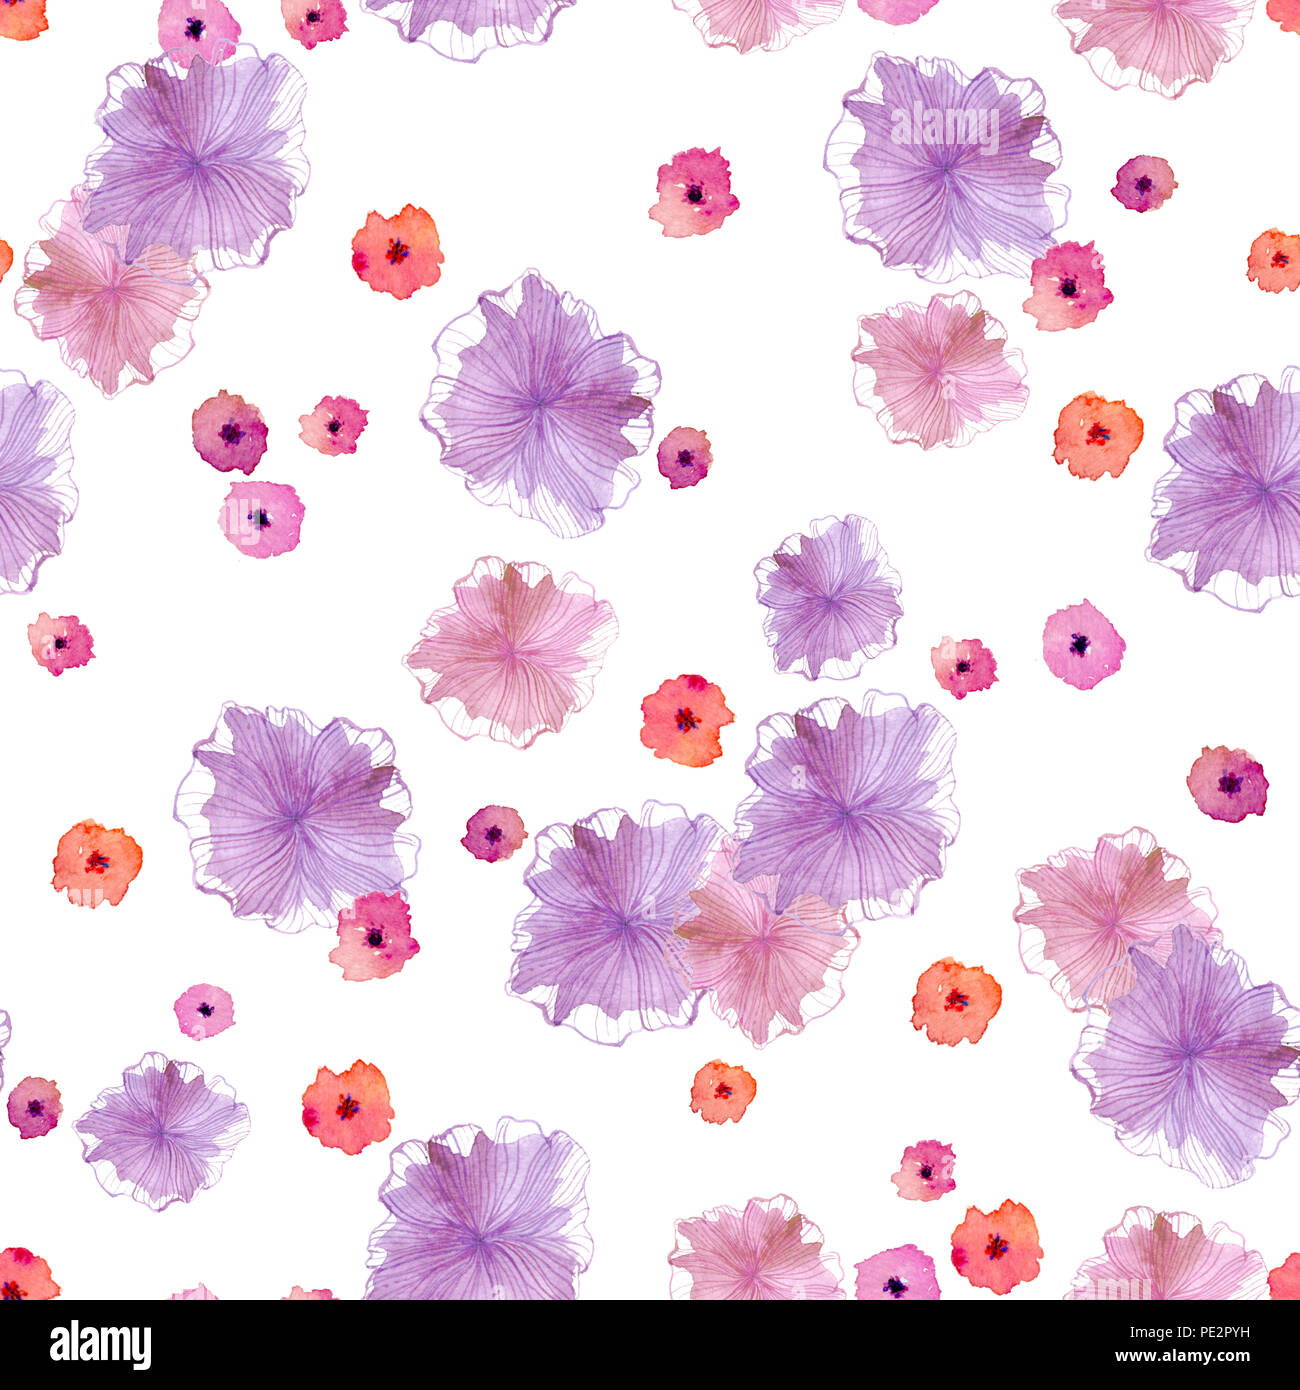 Nahtlose Muster mit abstract pink, violett und lila Blumen auf einem weißen Hintergrund. Es wird mit Hilfe von Aquarell getan. Stockfoto